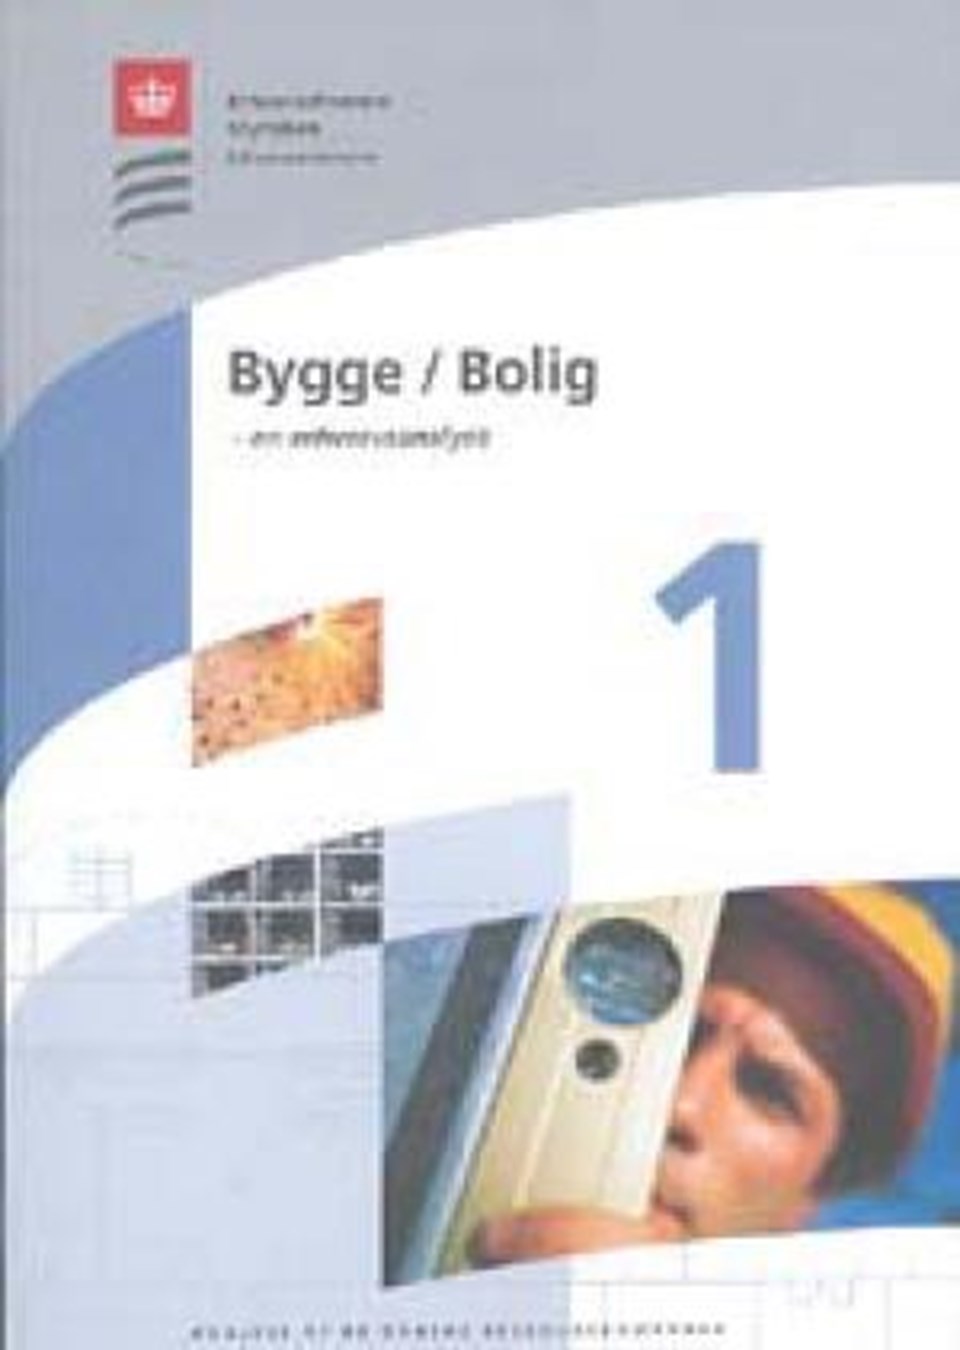 Bygge/Bolig